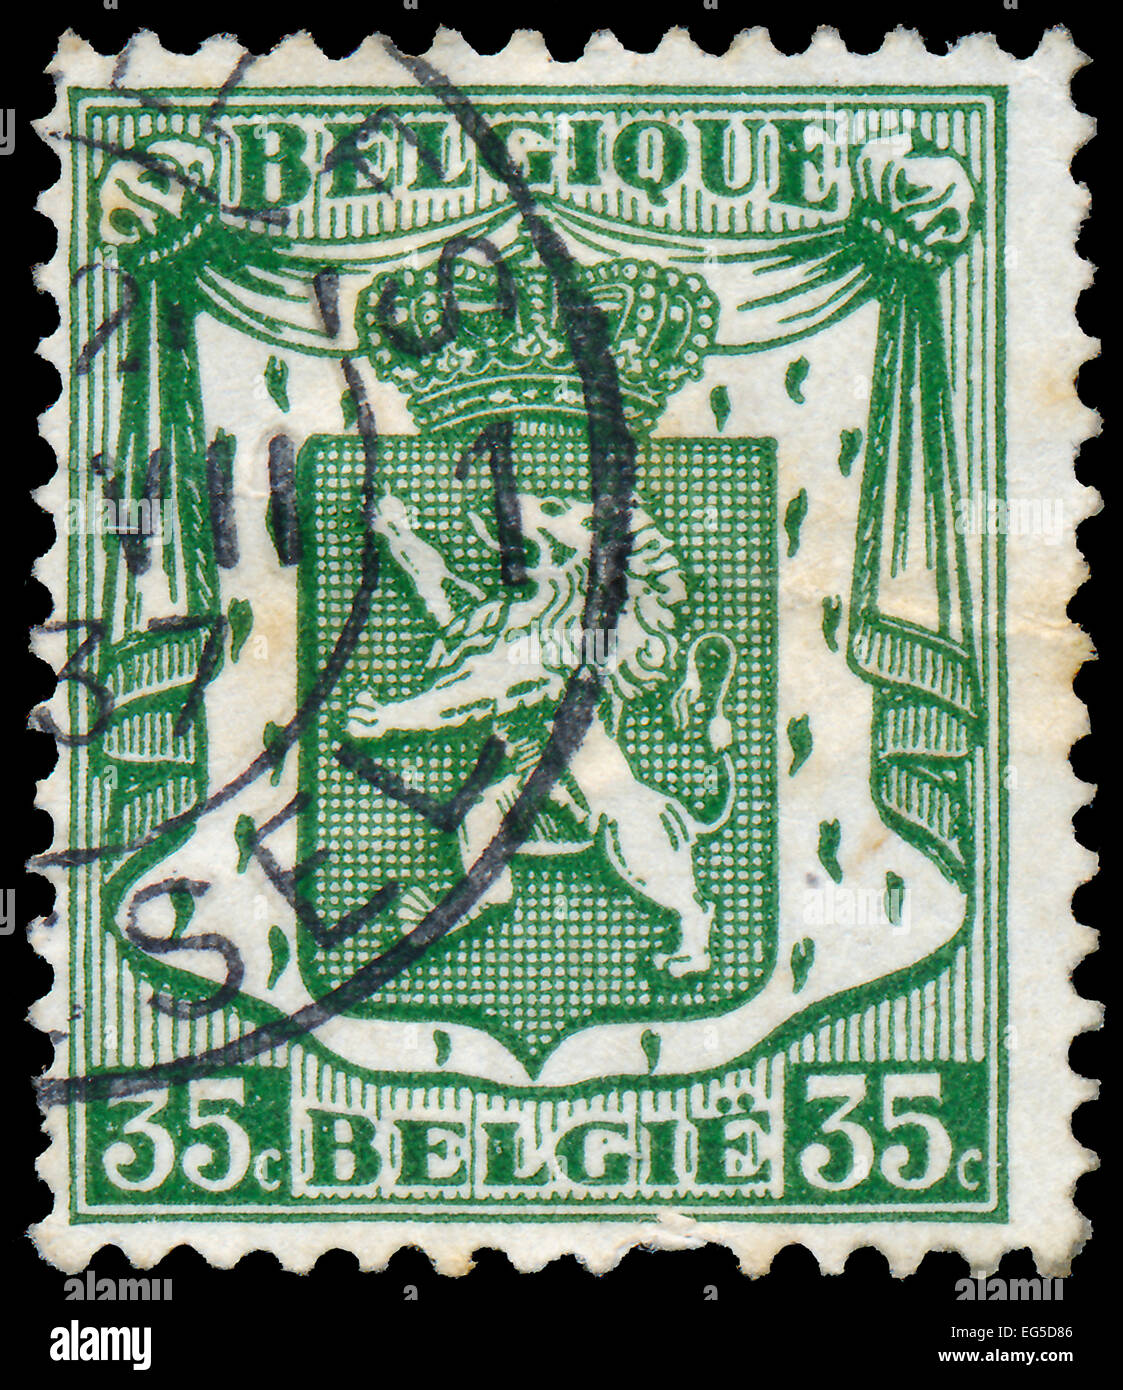 BELGIUM - CIRCA 1936: a stamp printed in the Belgium shows Lion of Belgium, circa 1936 Stock Photo